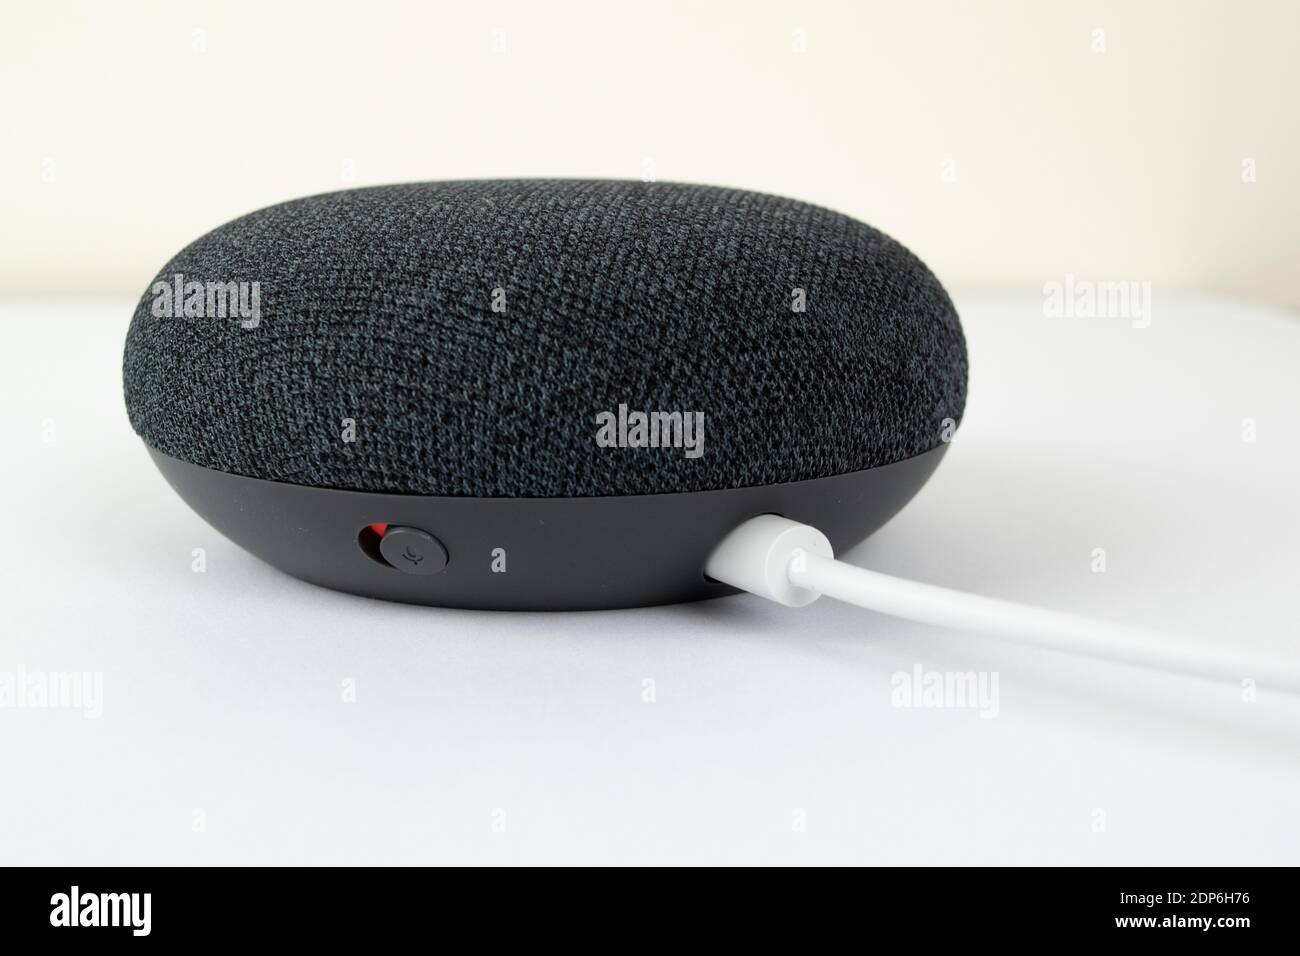 Londres, Royaume-Uni - 19 décembre 2020: Charbon Google Nest Home Mini Smart speaker avec Google Assistant intégré sur un fond blanc. Banque D'Images